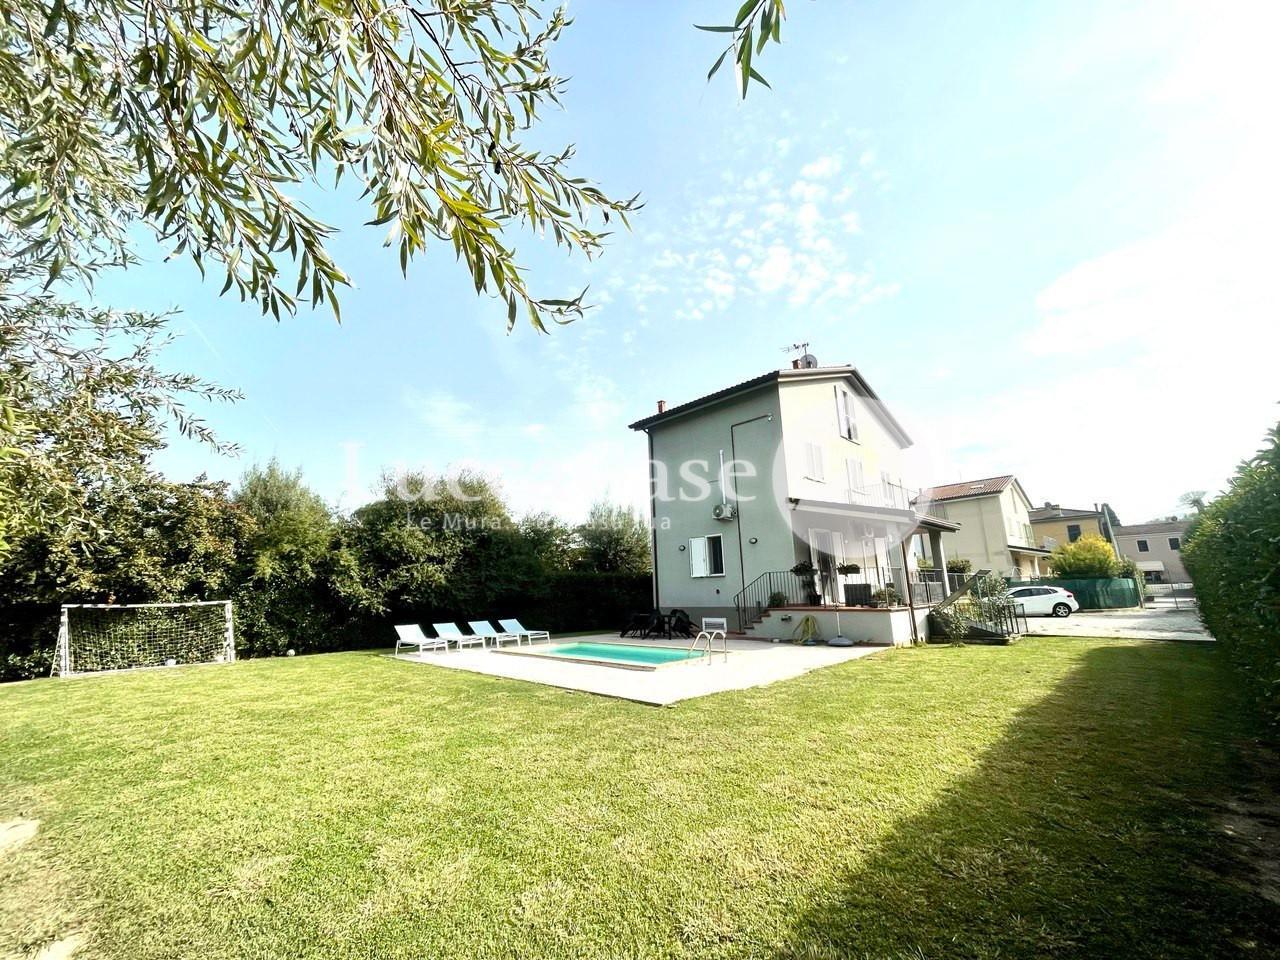 Casa indipendente arredata in affitto, Lucca san macario in piano